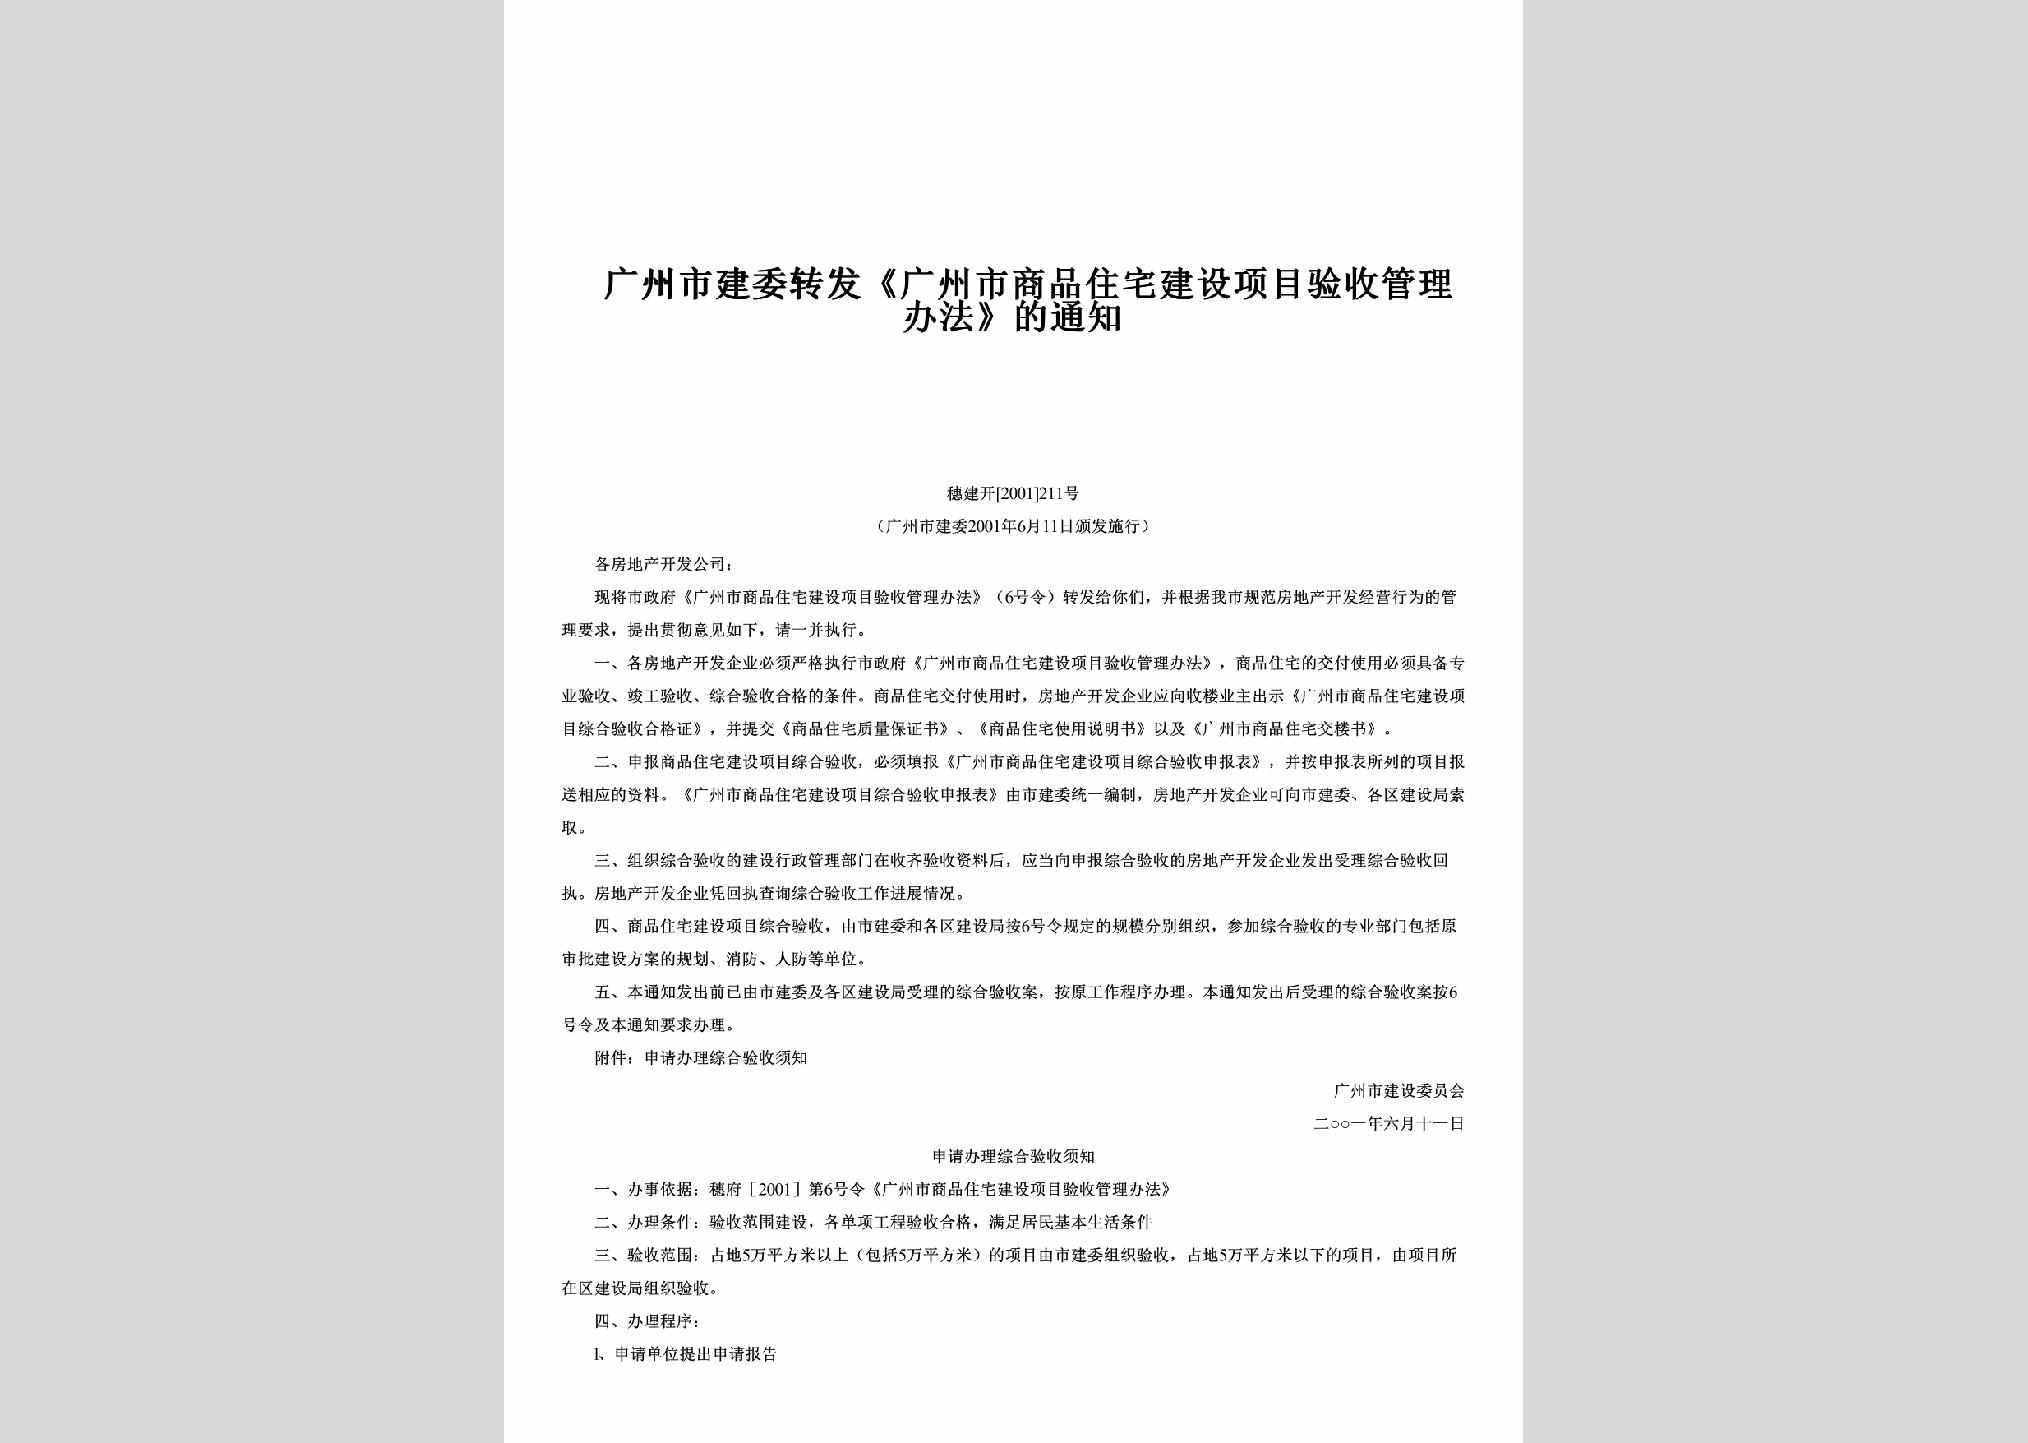 穗建开[2001]211号：转发《广州市商品住宅建设项目验收管理办法》的通知